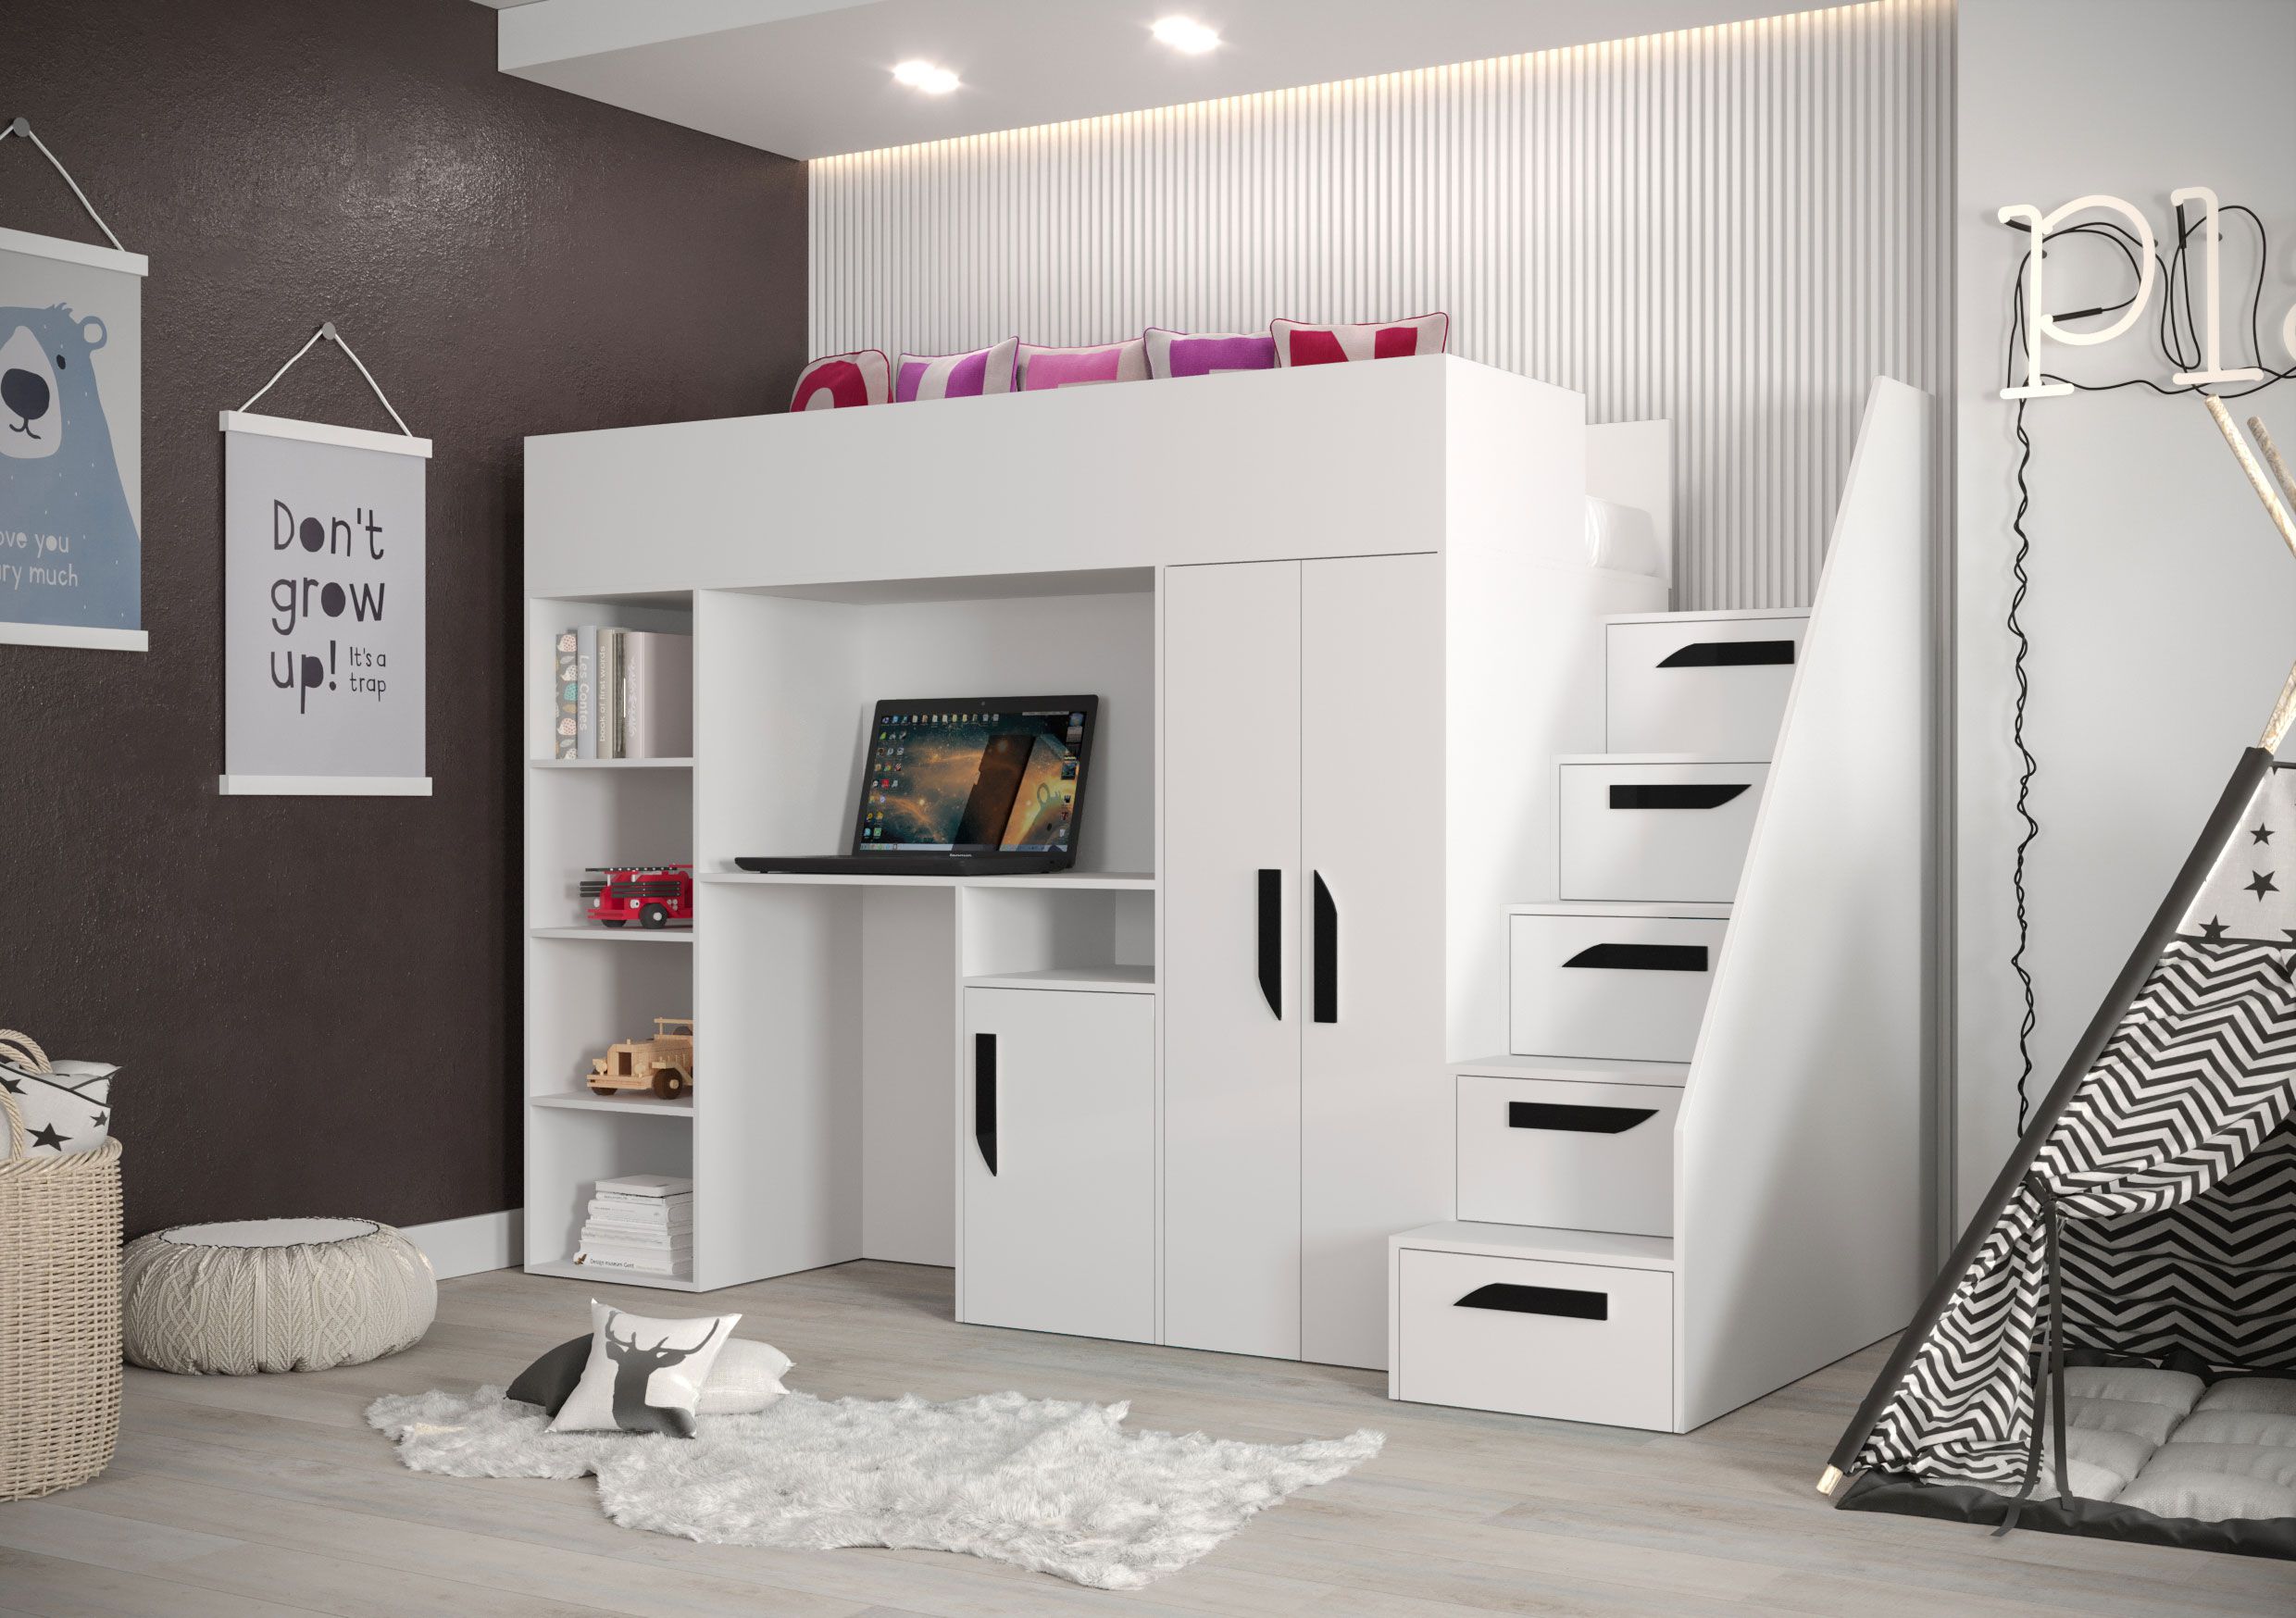 Lit fonctionnel / lit d'enfant / lit surélevé combiné avec espace de rangement et bureau Jura 24, couleur : blanc / noir - dimensions : 165 x 247 x 120 cm (h x l x p)